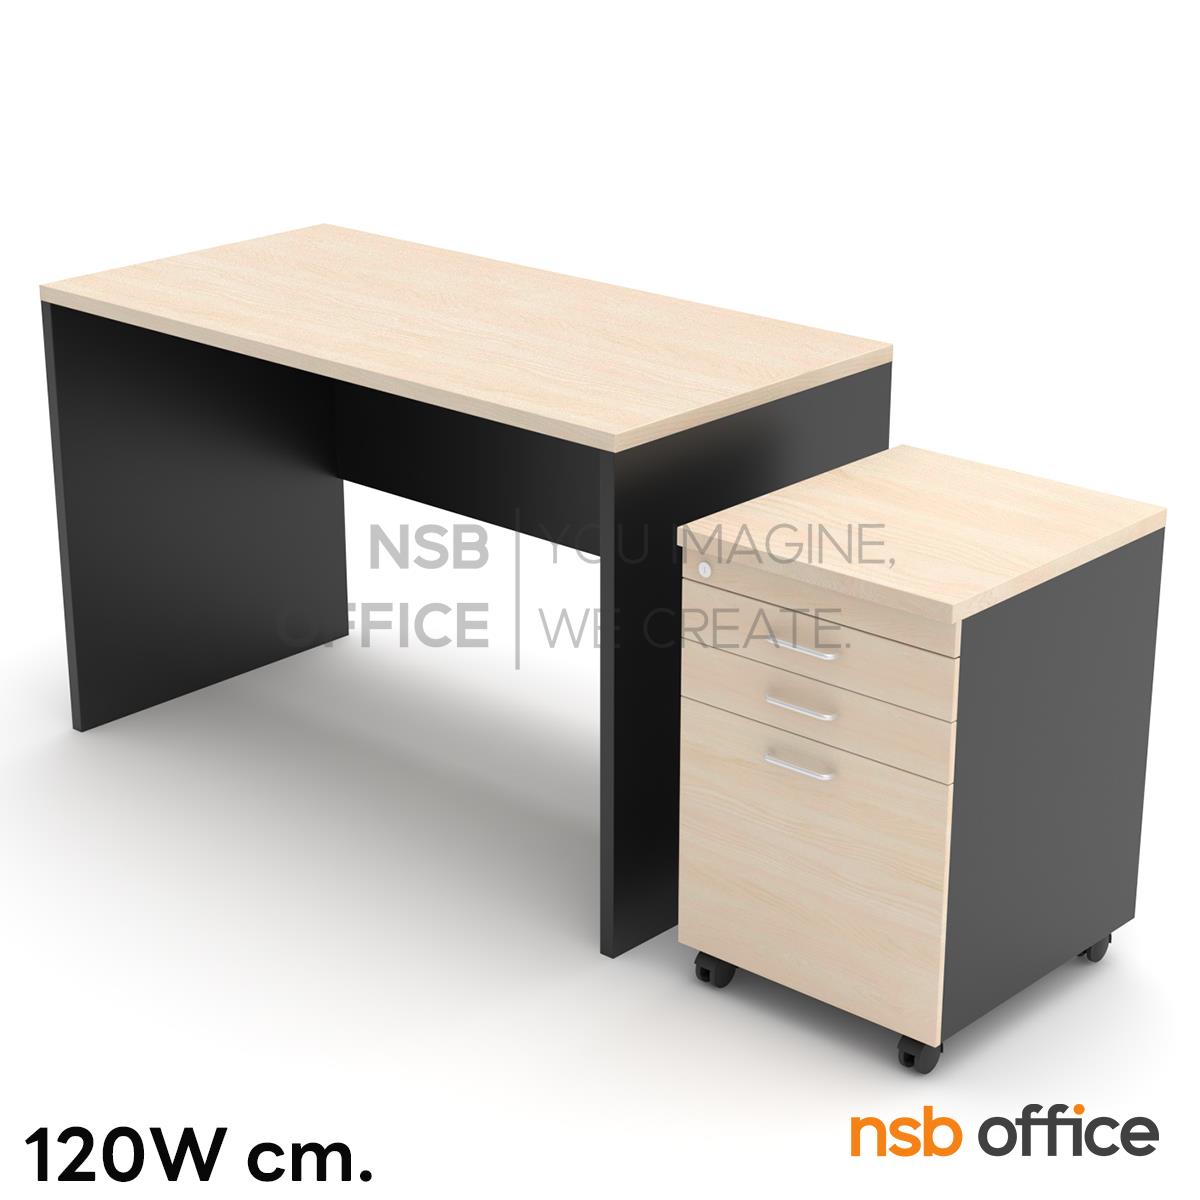 โต๊ะทำงาน รุ่น Ciara (เคลียร่า) ขนาด 120W ,150W cm. พร้อมตู้ลิ้นชักล้อเลื่อน